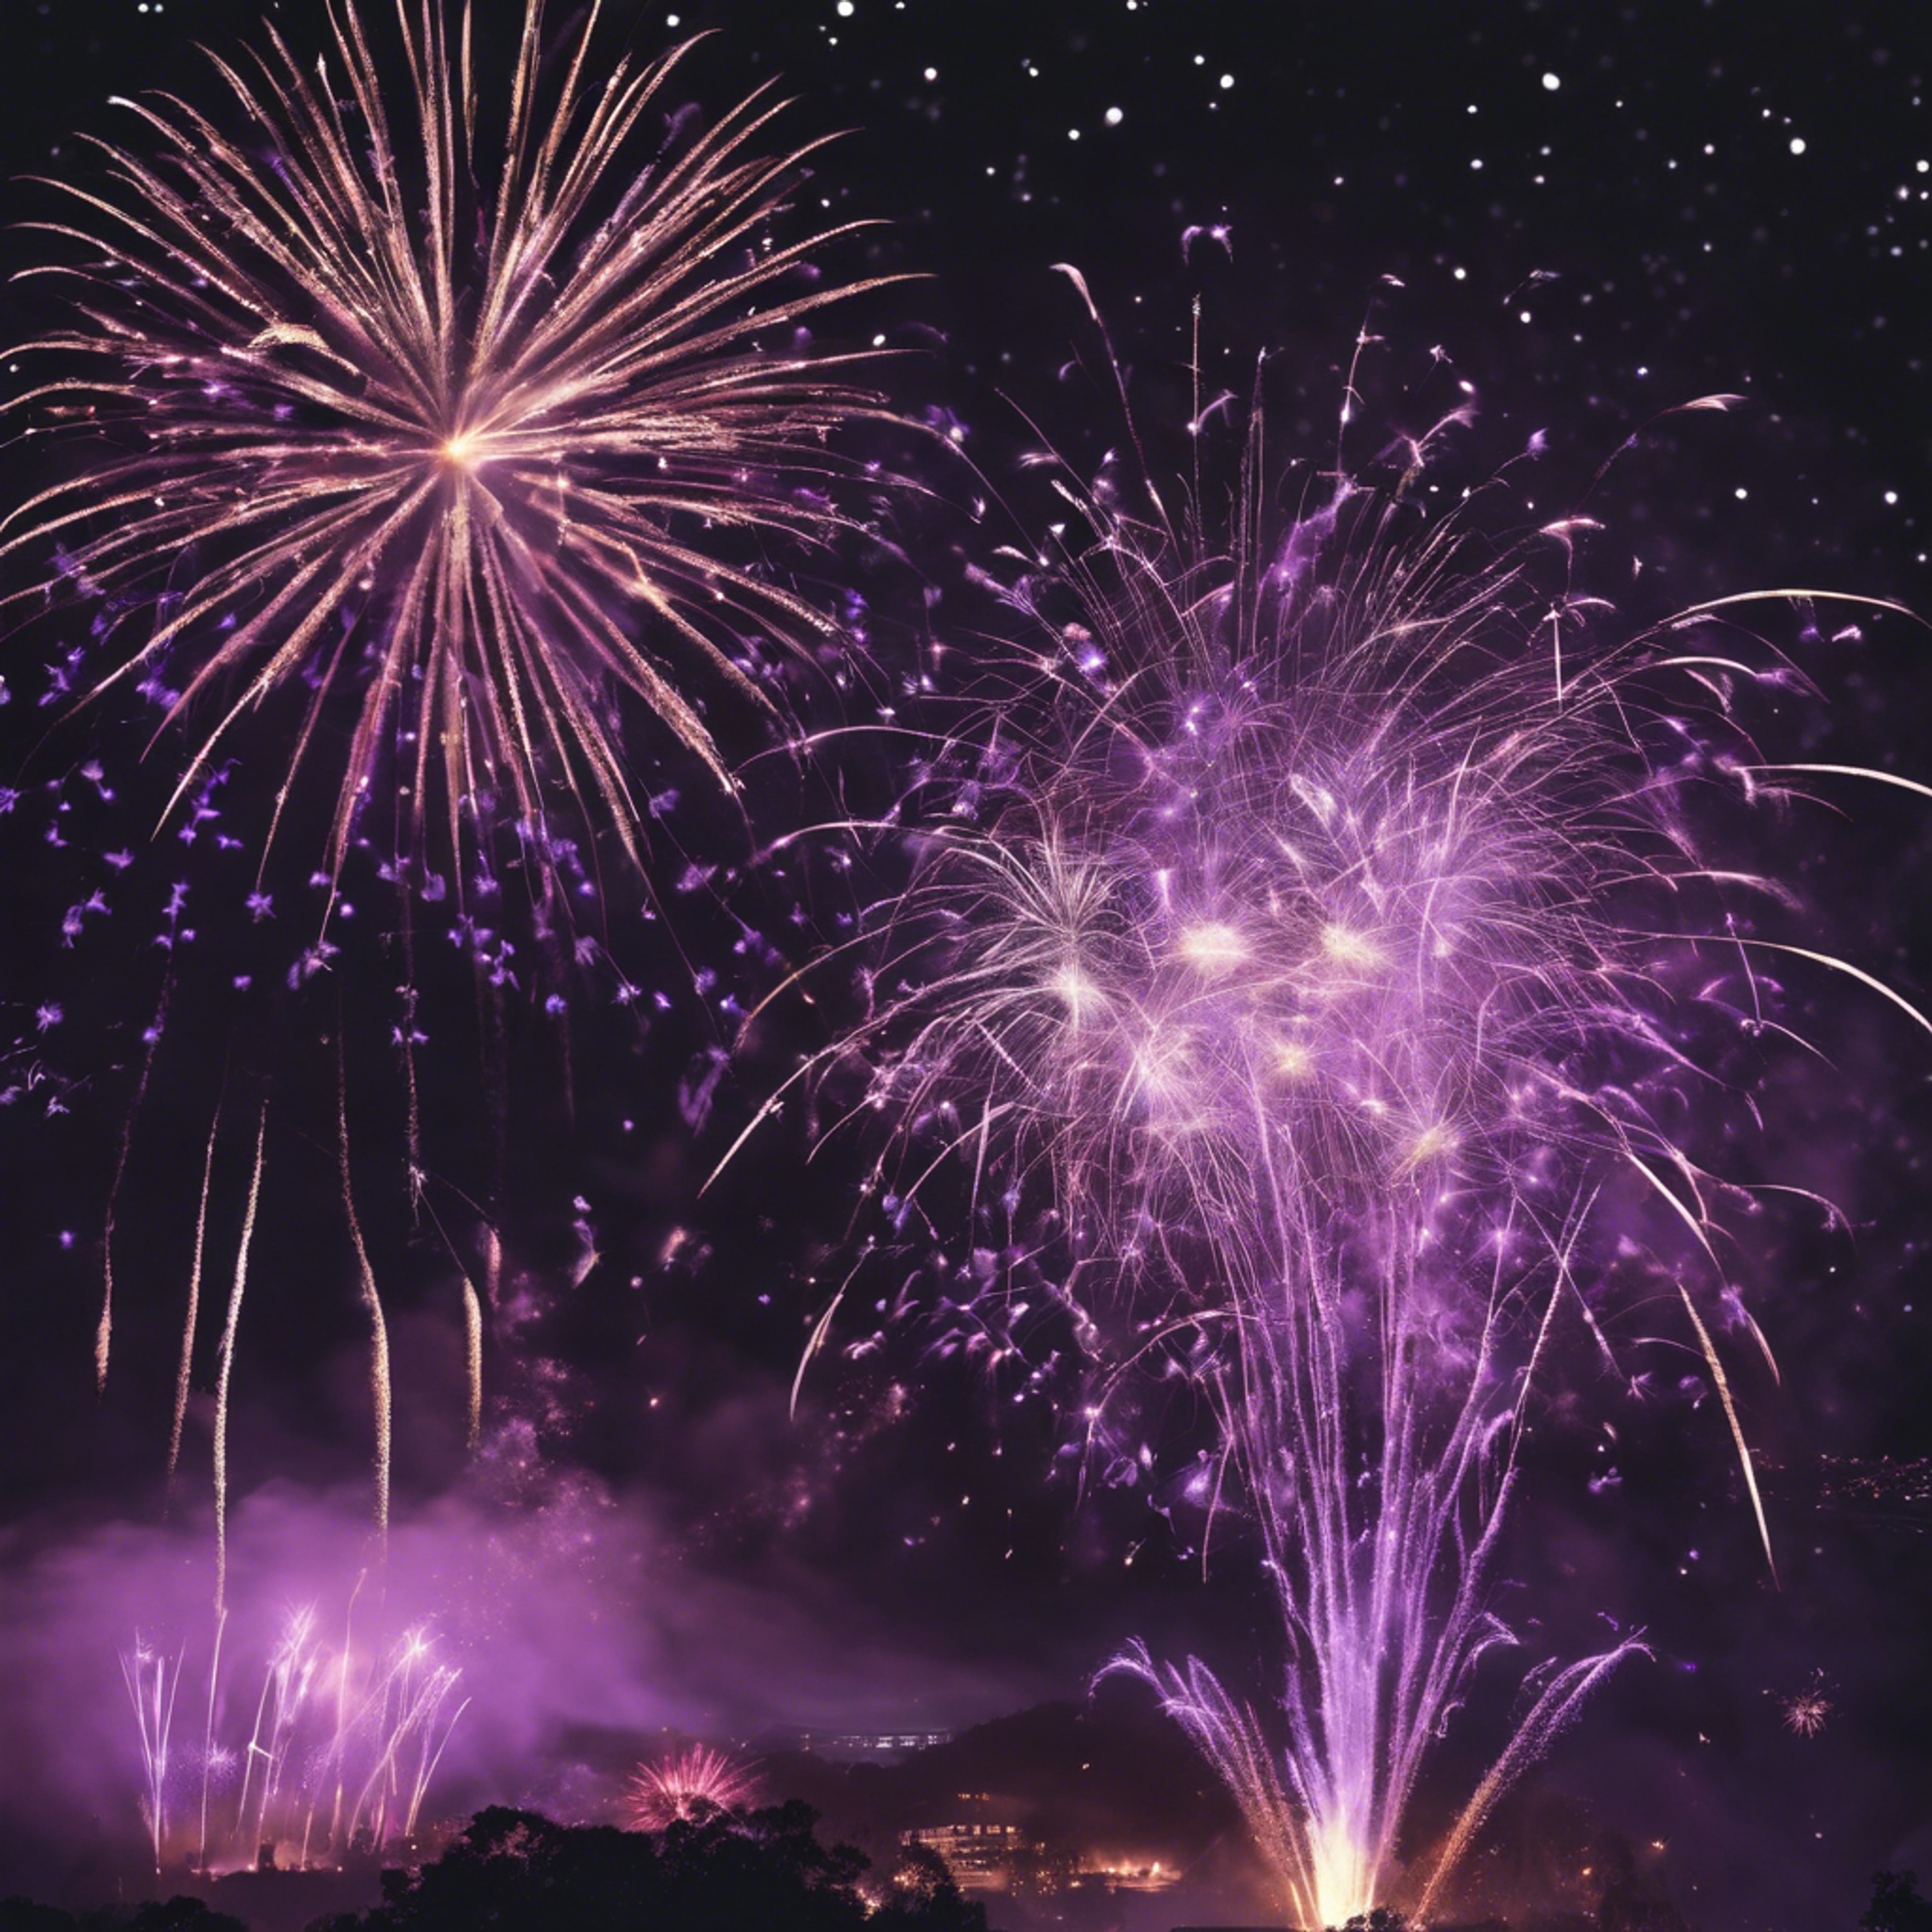 Black and purple fireworks lighting up the night sky during a grand celebration. Papel de parede[a63540e6fc8e4a549ec0]